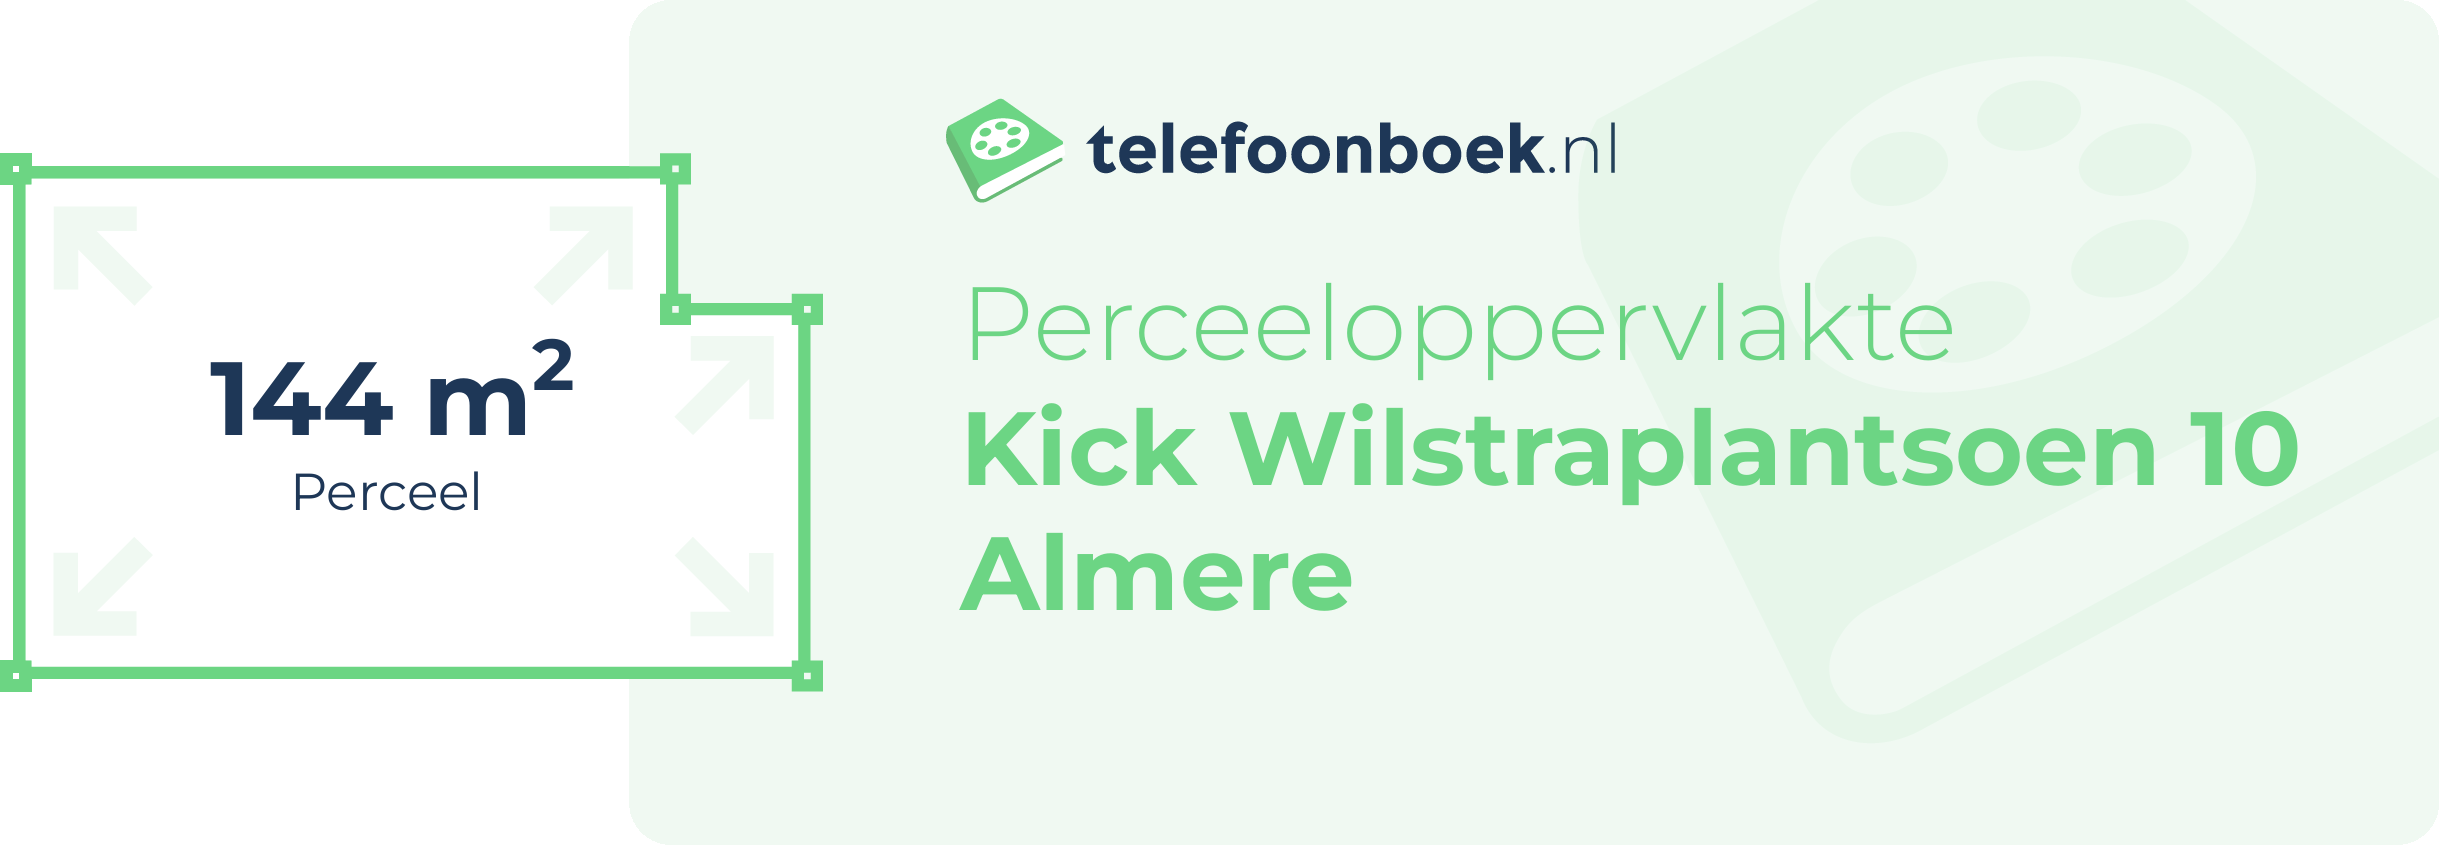 Perceeloppervlakte Kick Wilstraplantsoen 10 Almere